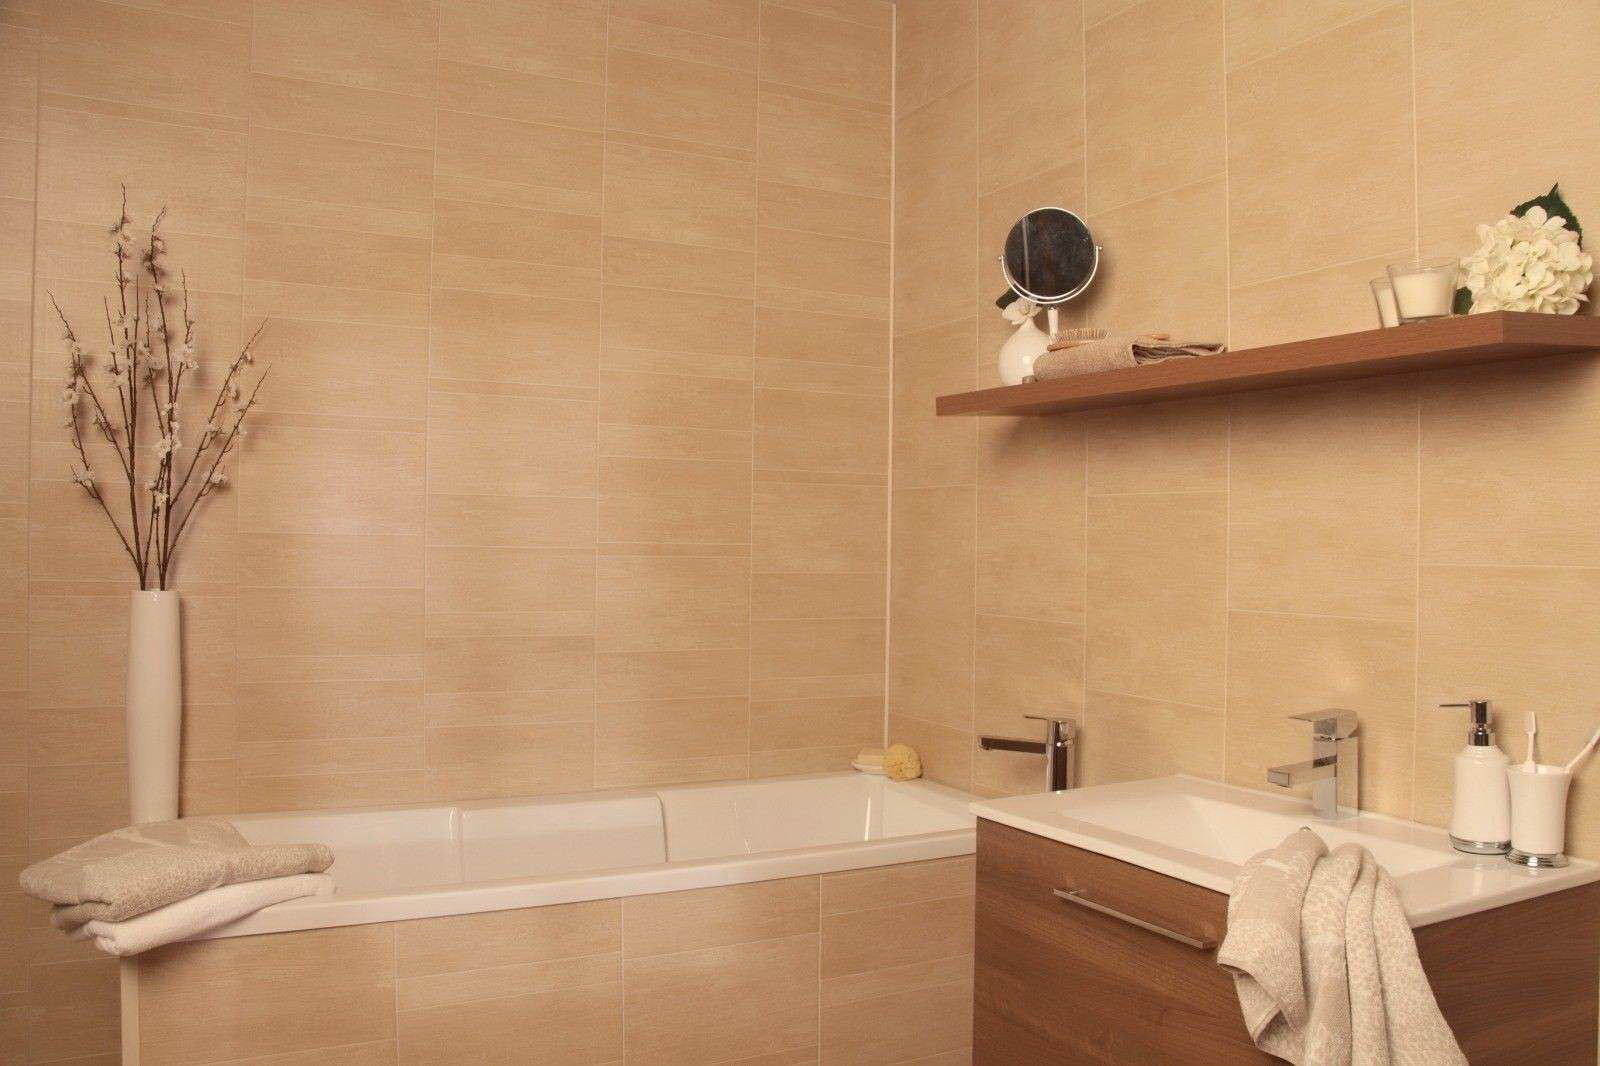 Панели в ванной отзывы. Отделочные панели для ванной комнаты. Ванная отделанная панелями. Стеновые панели для ванной комнаты. Настенные панели для ванной.